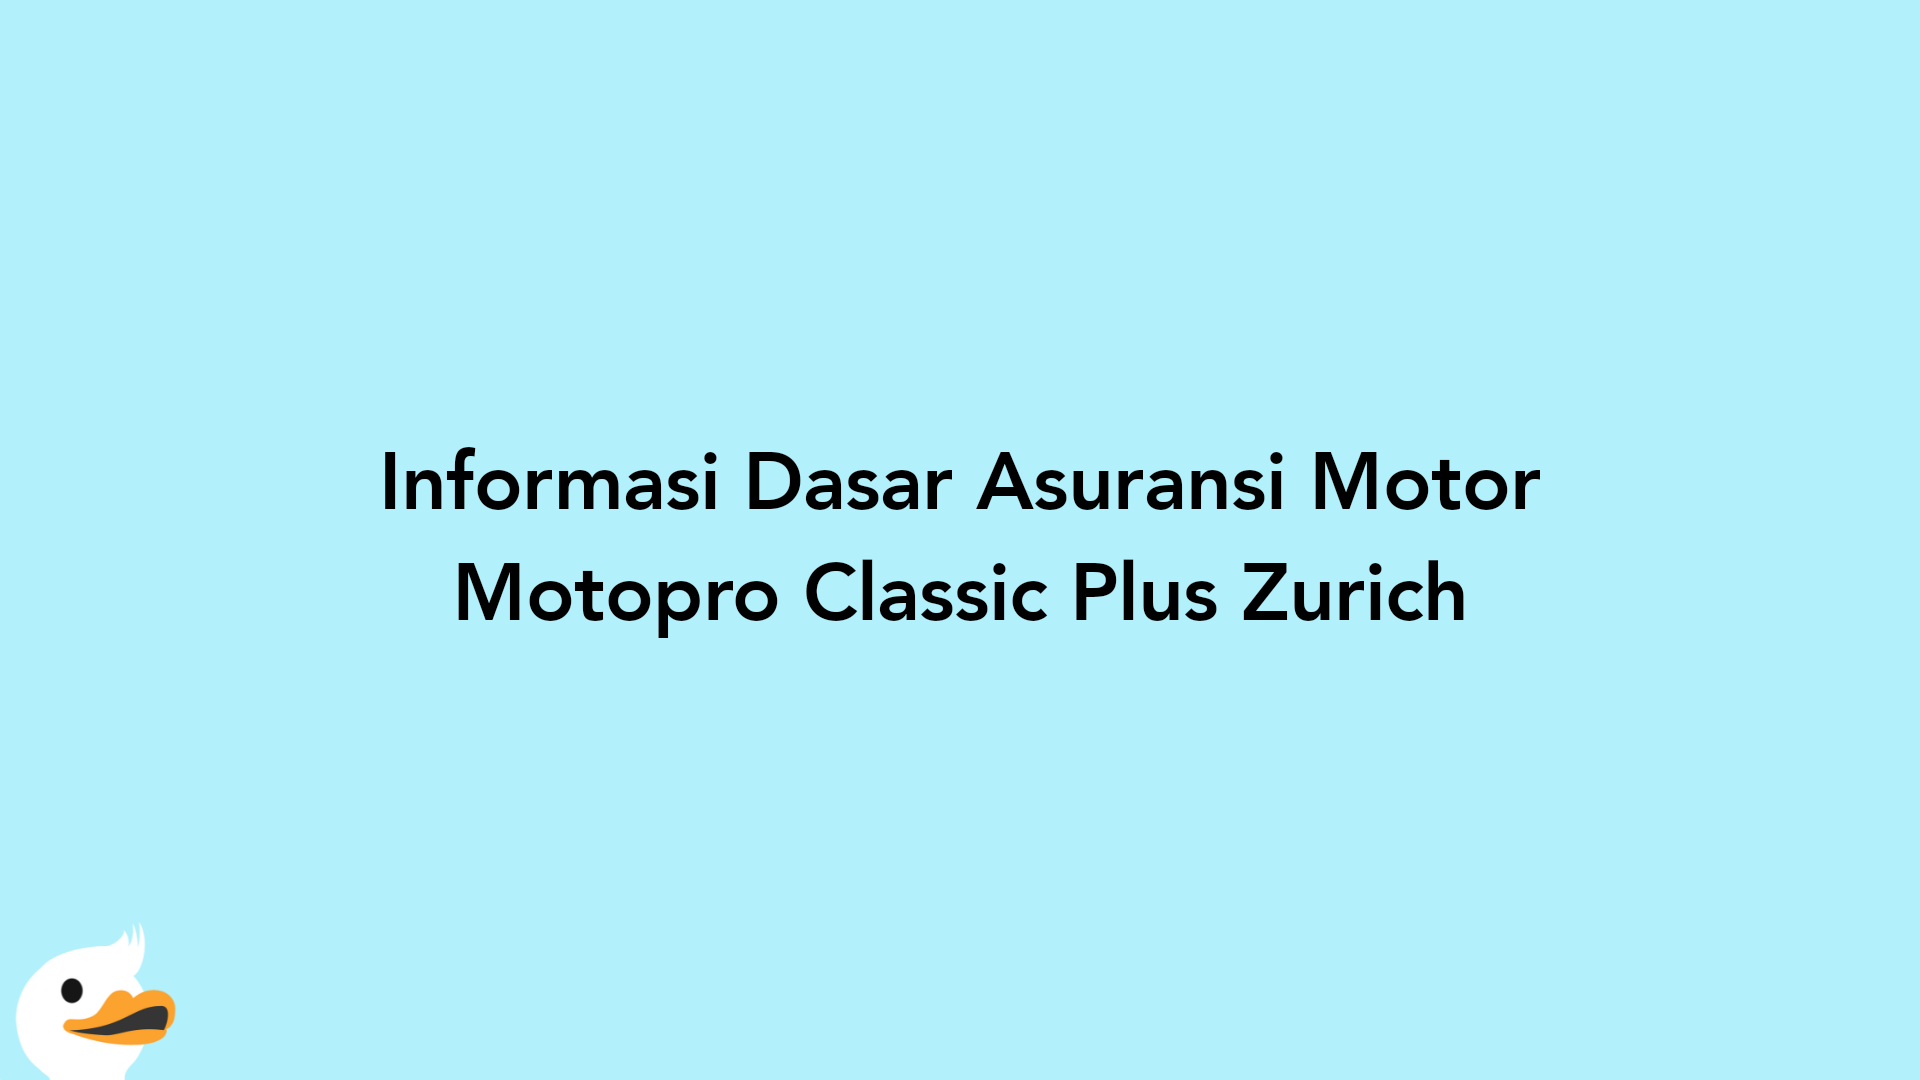 Informasi Dasar Asuransi Motor Motopro Classic Plus Zurich